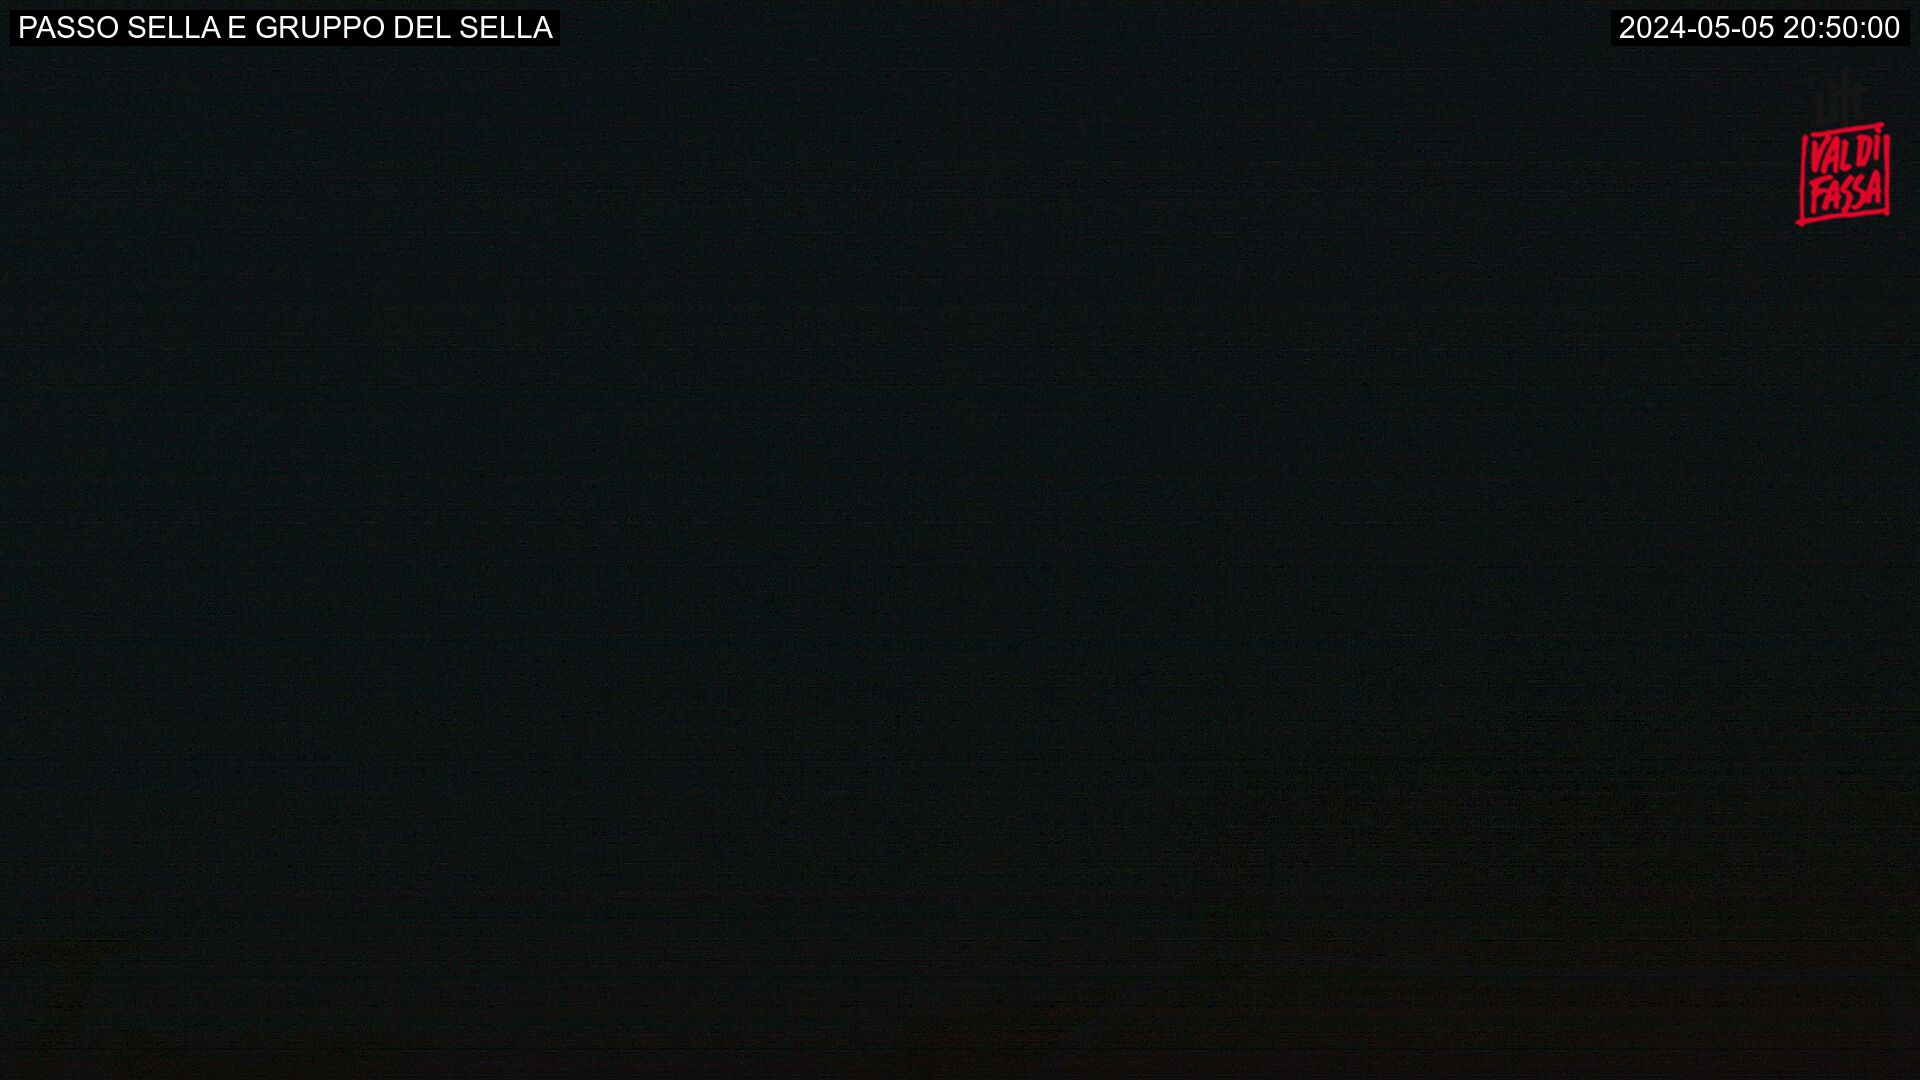 Sella pass and Sella group